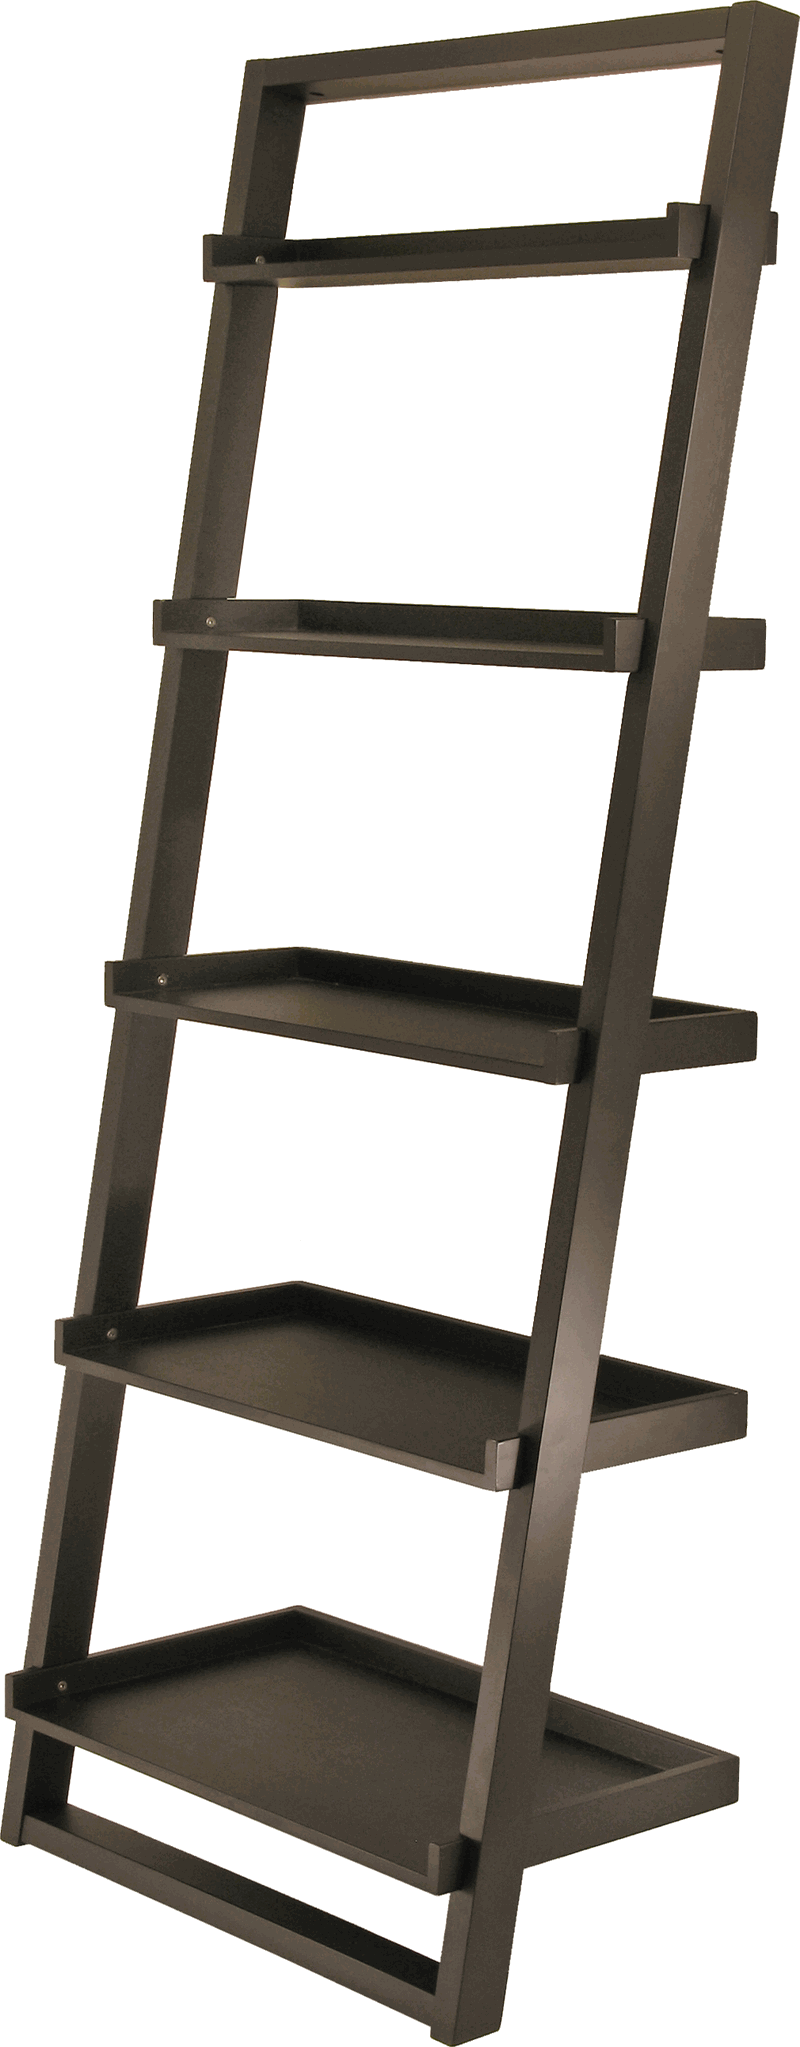 29525 Black Leaning Bookshelf - 5 Tier